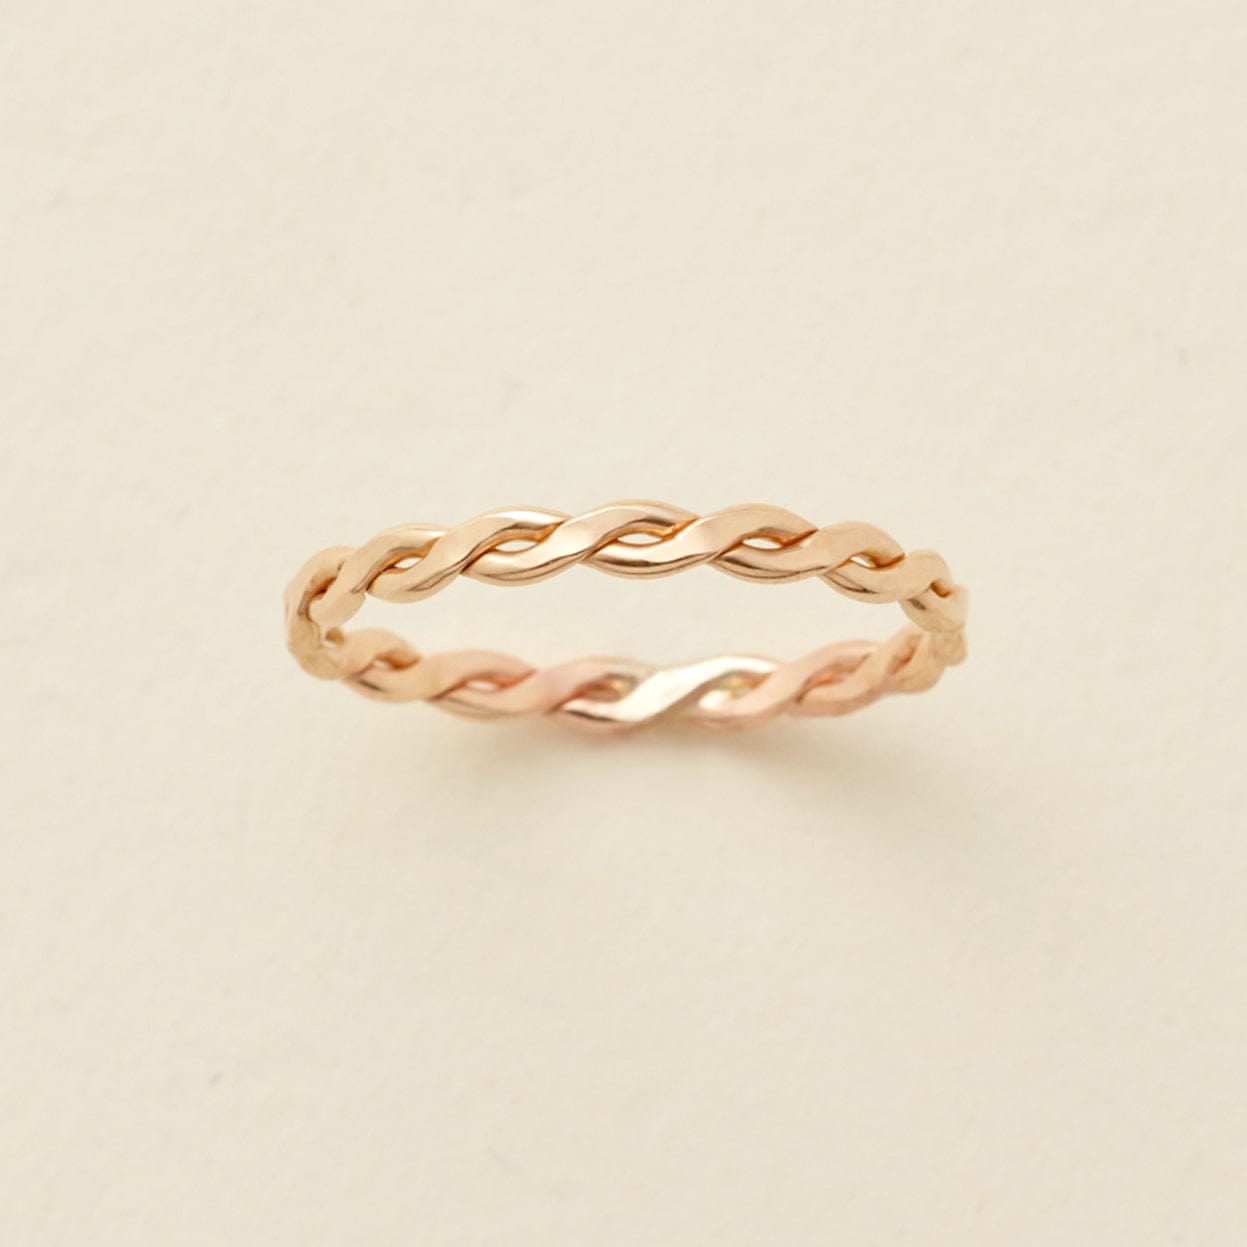 Laurel Ring Gold Filled / 5 Ring